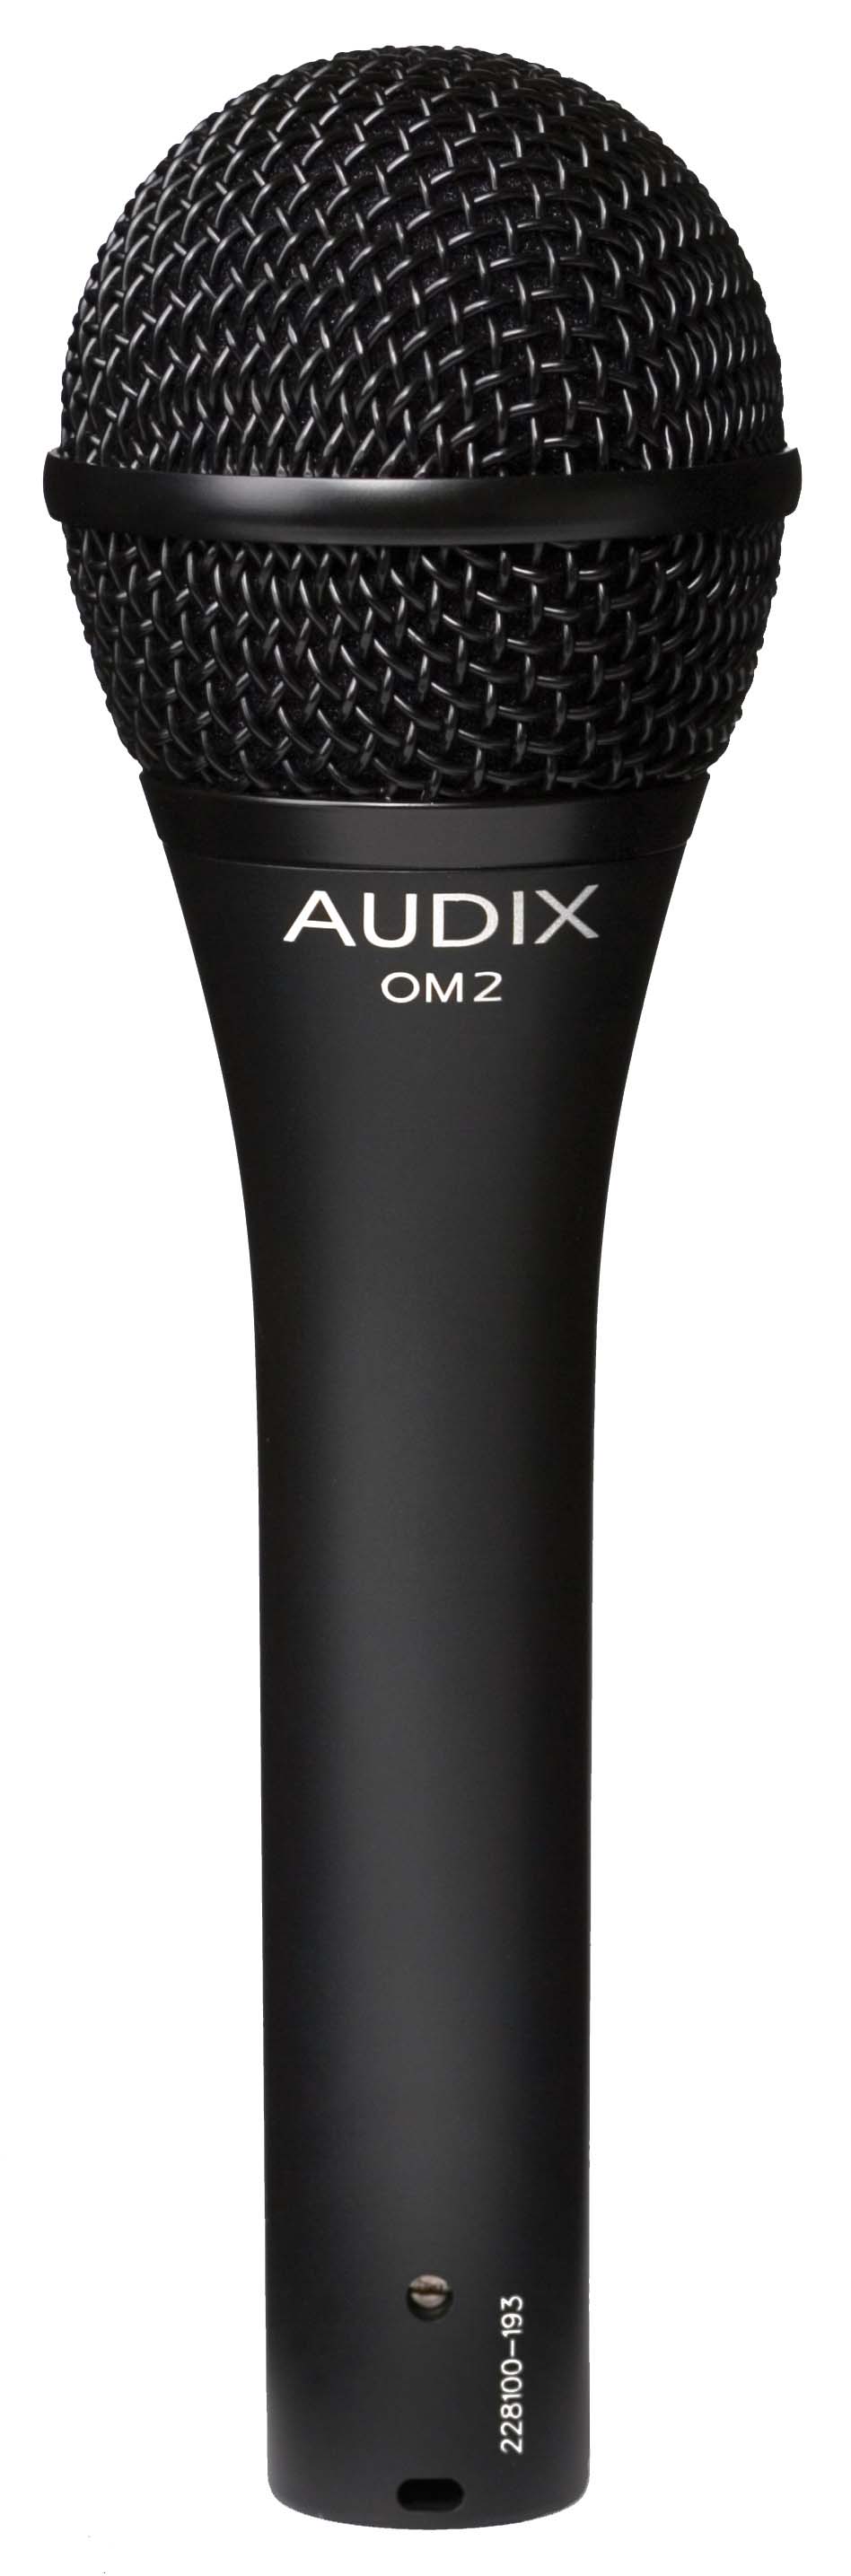 Ручные микрофоны AUDIX OM2 ручные микрофоны audix om5